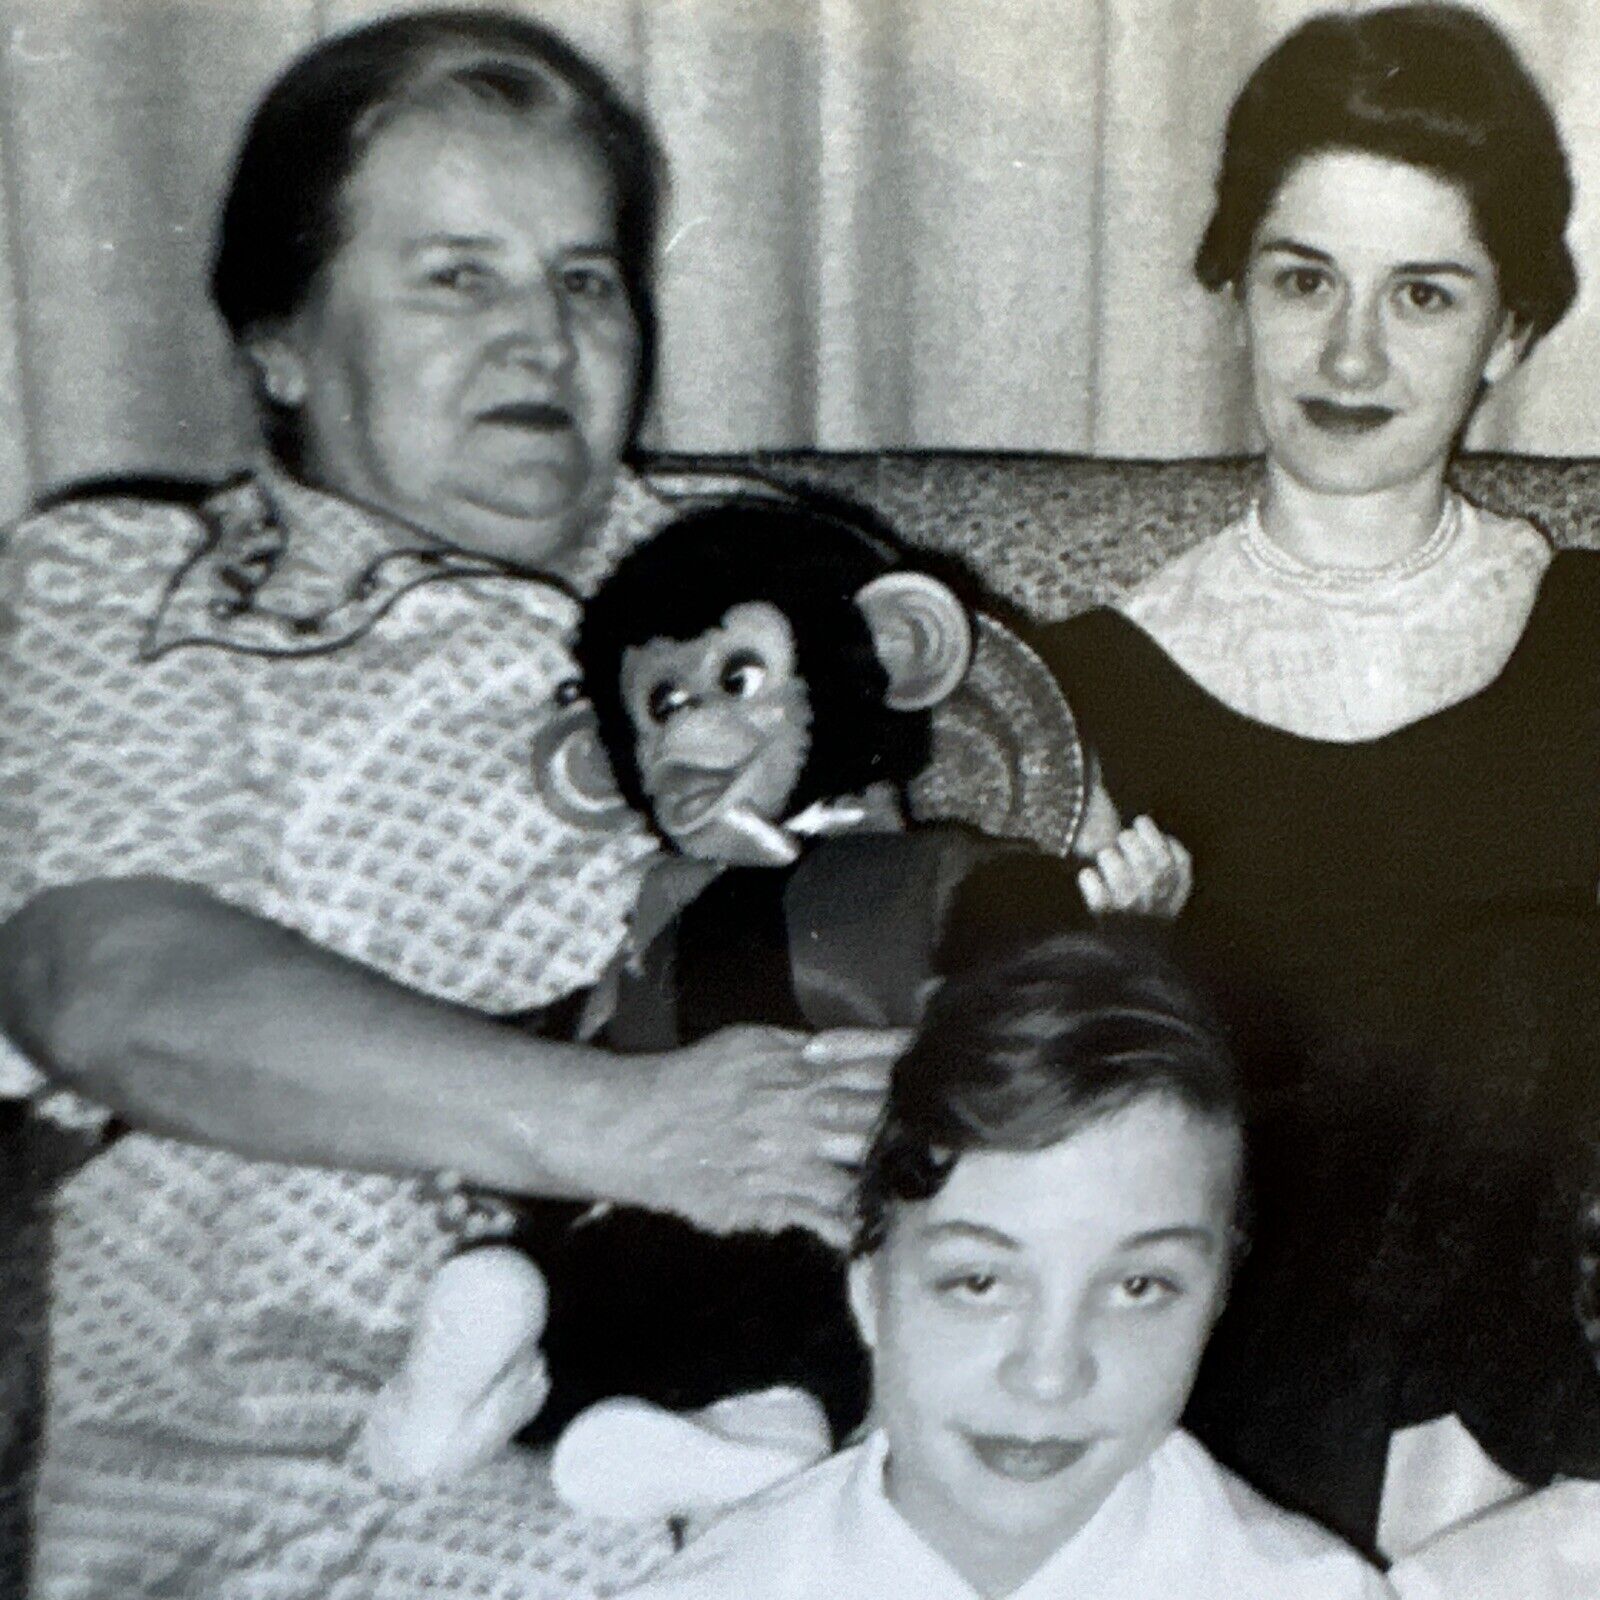 VINTAGE PHOTO 1950s birthday party scary monkey doll chimpanzee Plush Toy Weird